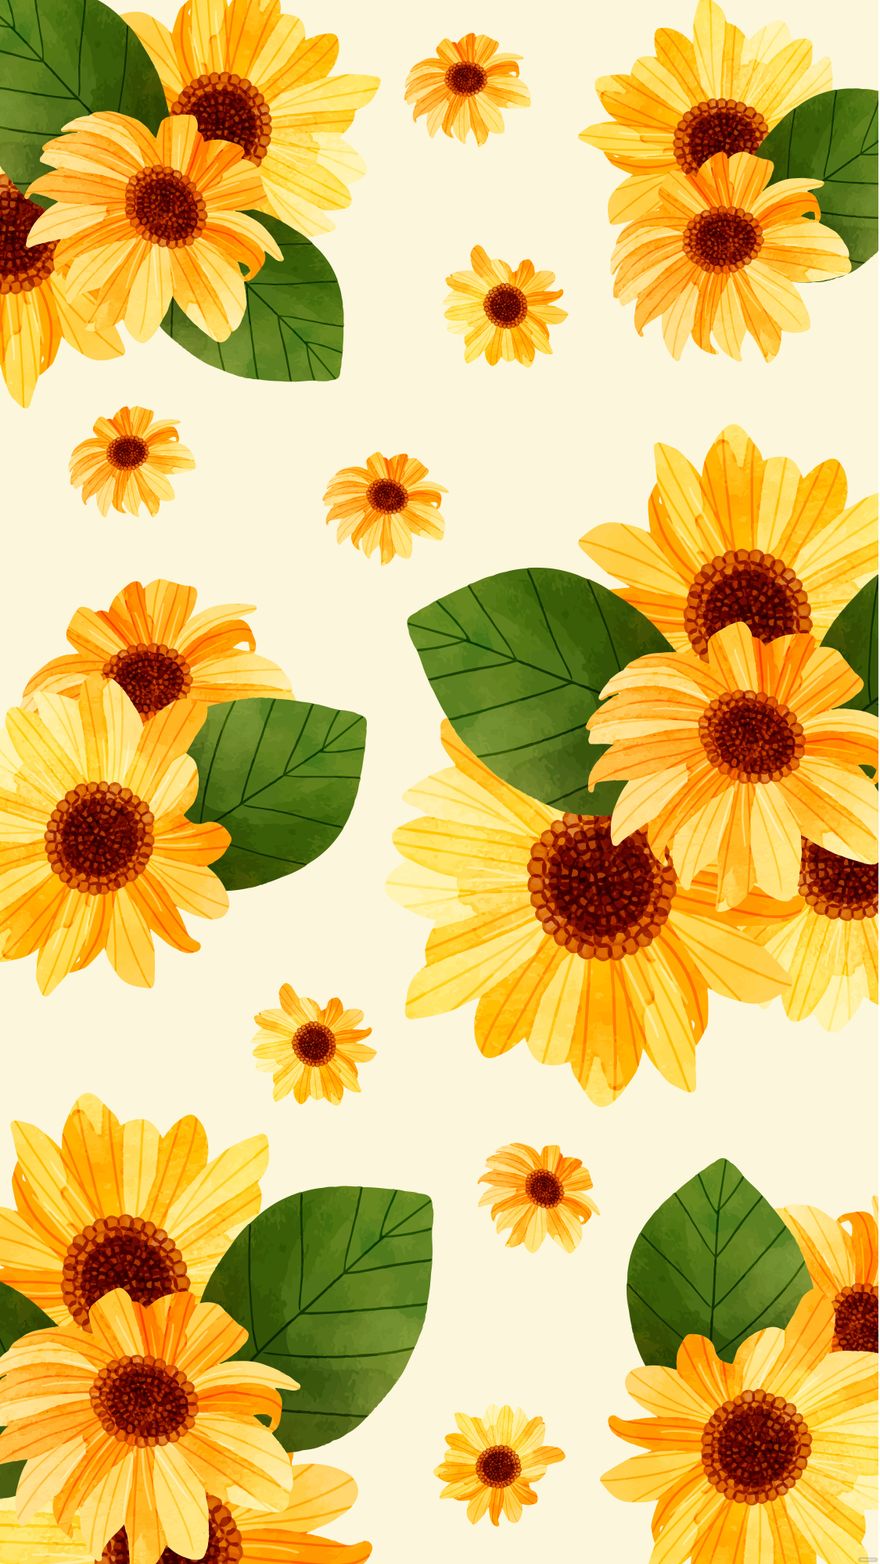 Free Aesthetic Sunflower Iphone Background - EPS, Illustrator, JPG, SVG |  